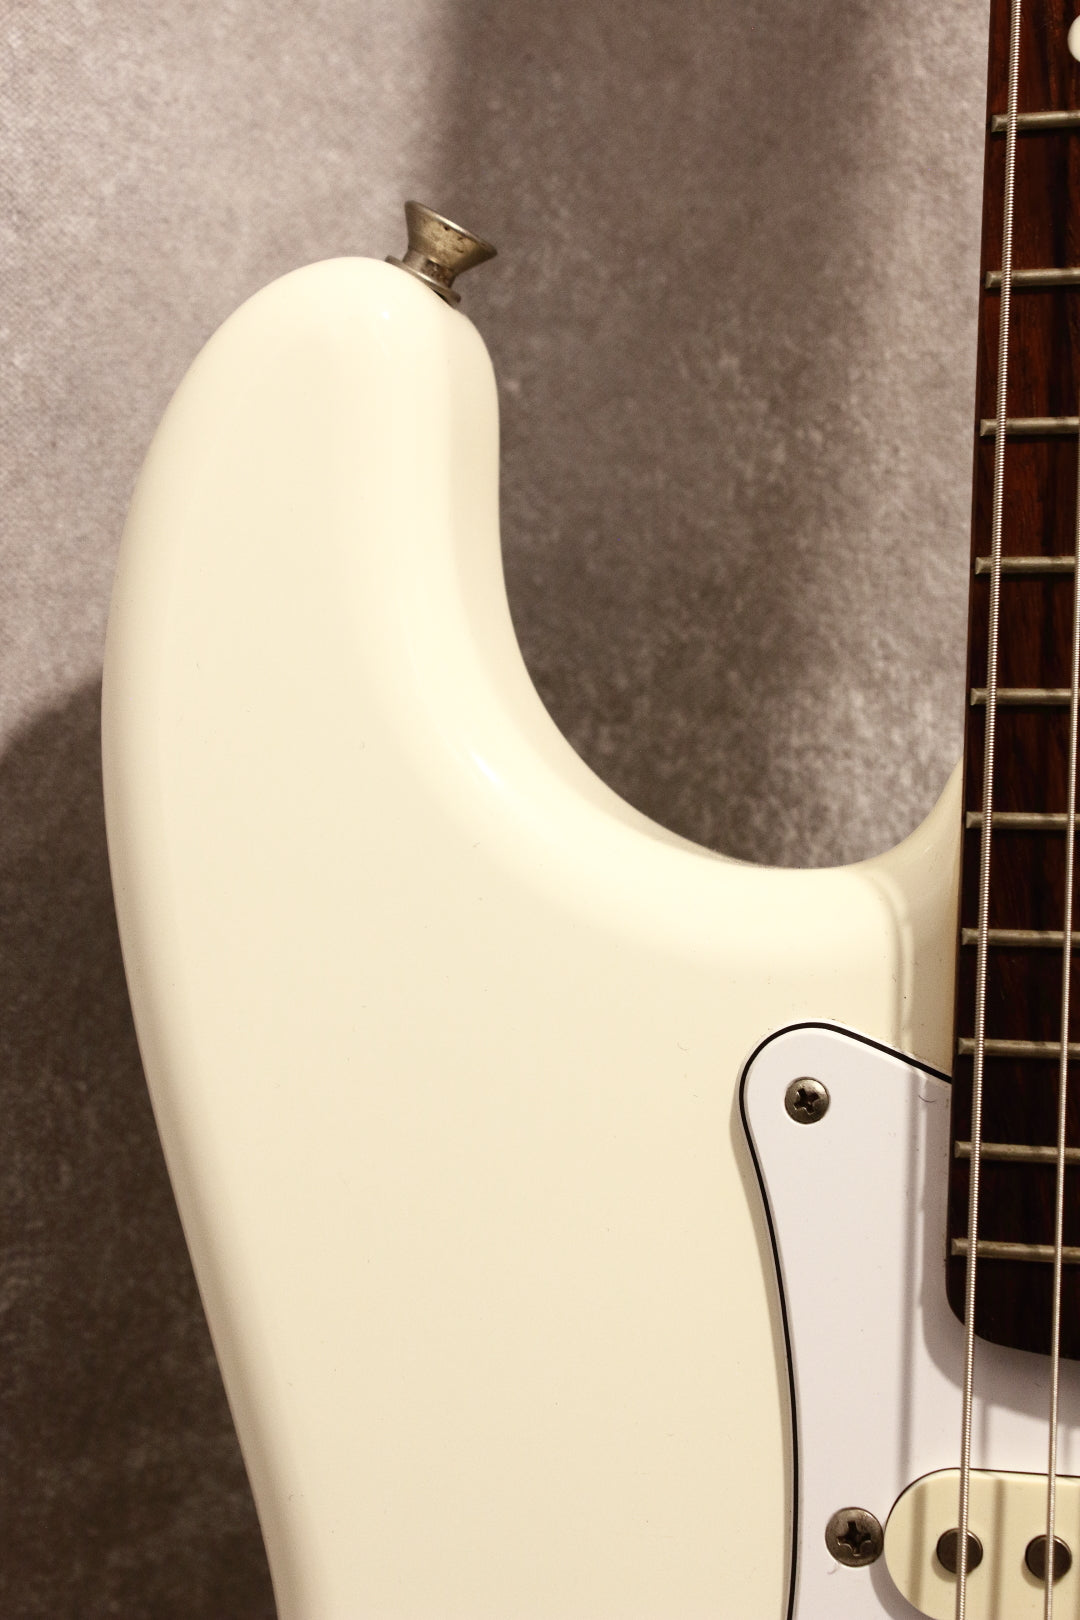 Fender Japan '62 Stratocaster ST62 Vintage White 2014